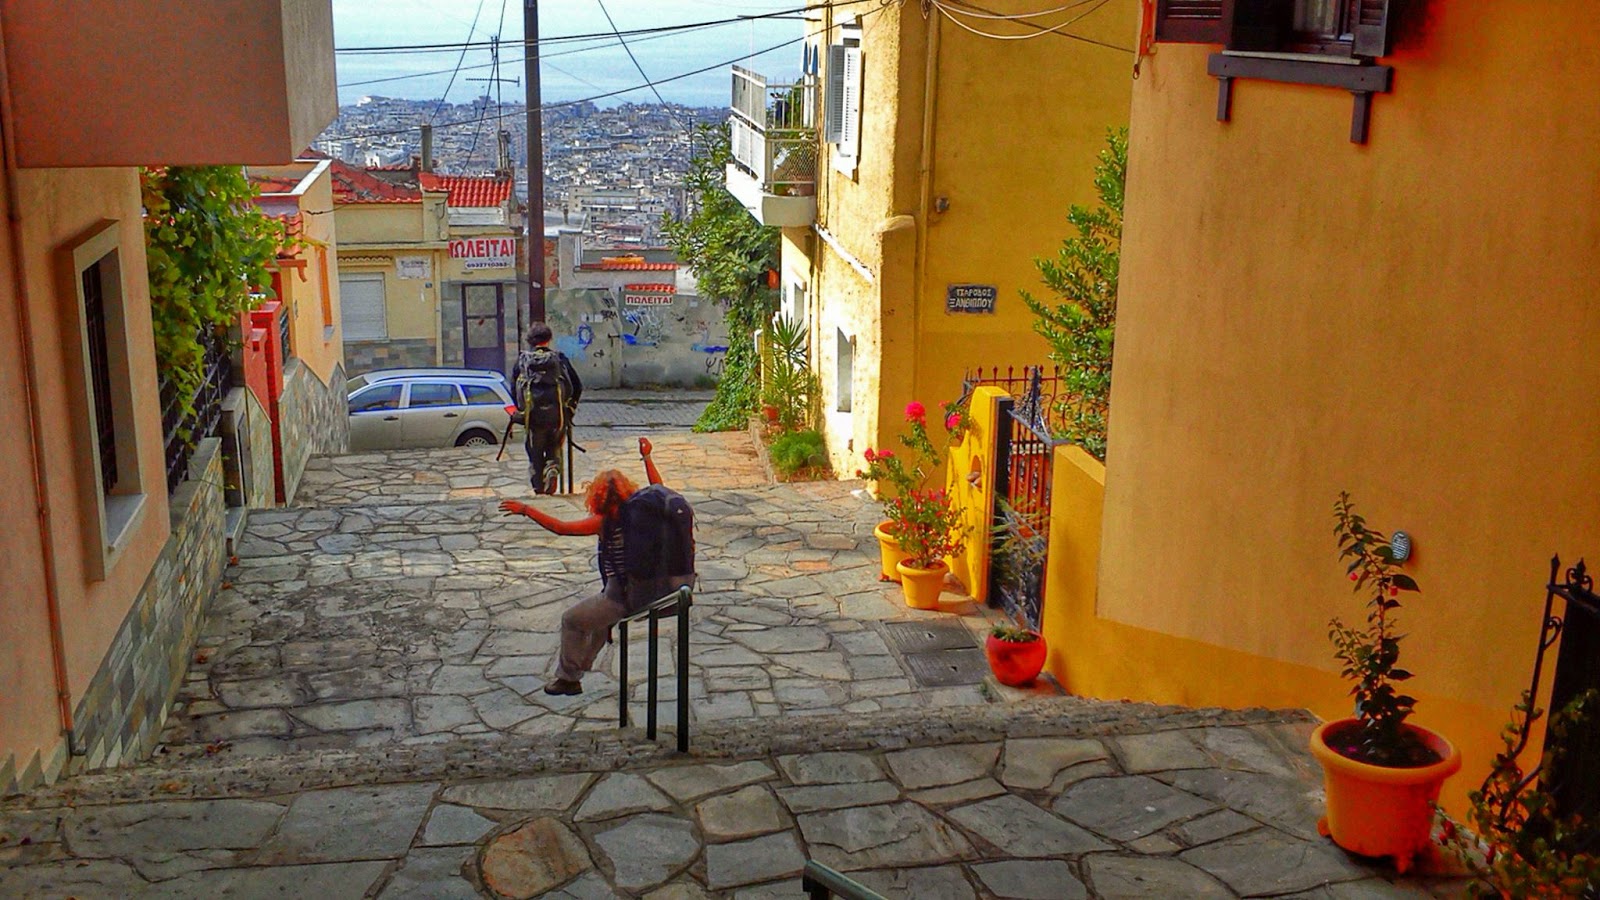 εν πλω σημειώσεις φωτογραφίας : Στα στενά της Άνω Πόλης Θεσσαλονίκης,  φωτογραφίες&amp; video, της Χριστίνας Σαραφιανού ,γράφει ο Τάσος Ορφανίδης